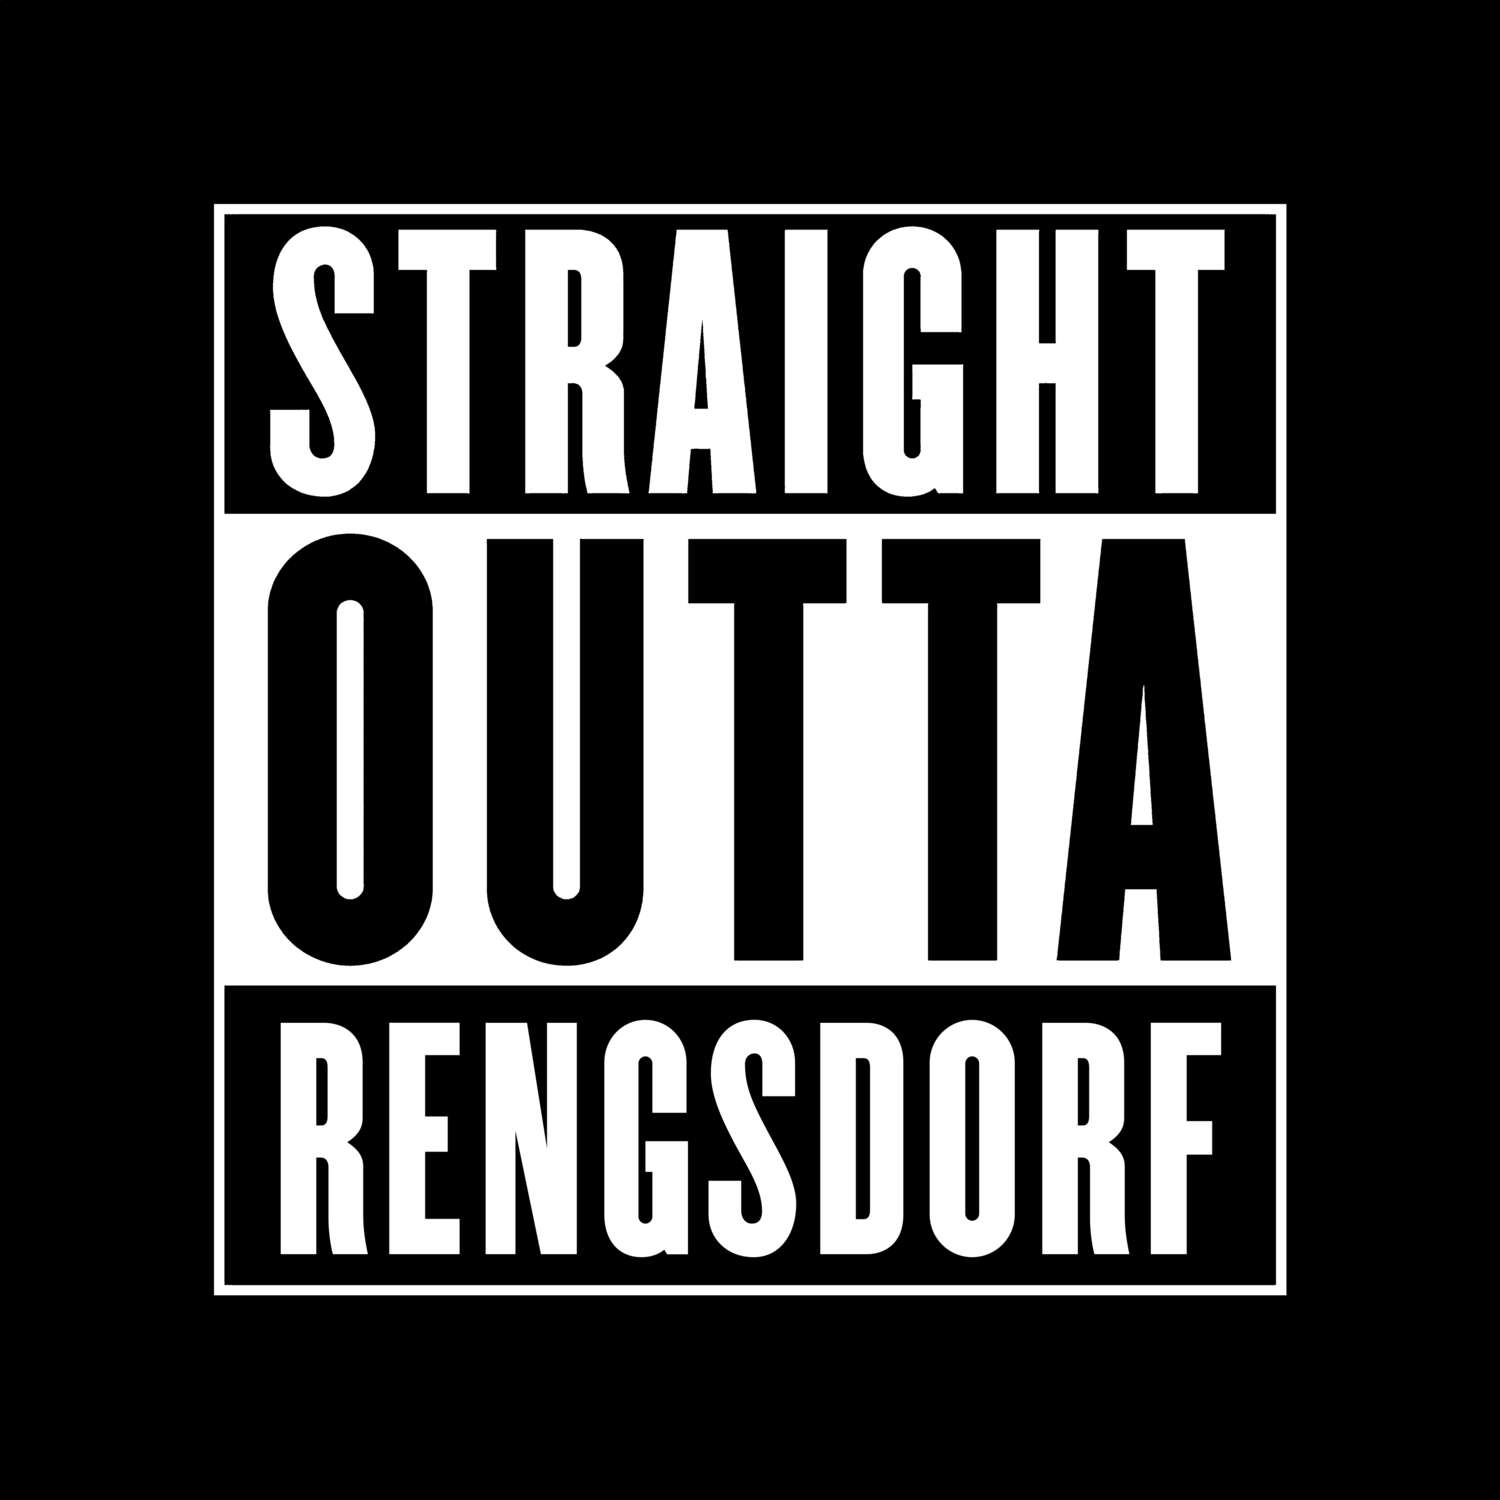 Rengsdorf T-Shirt »Straight Outta«